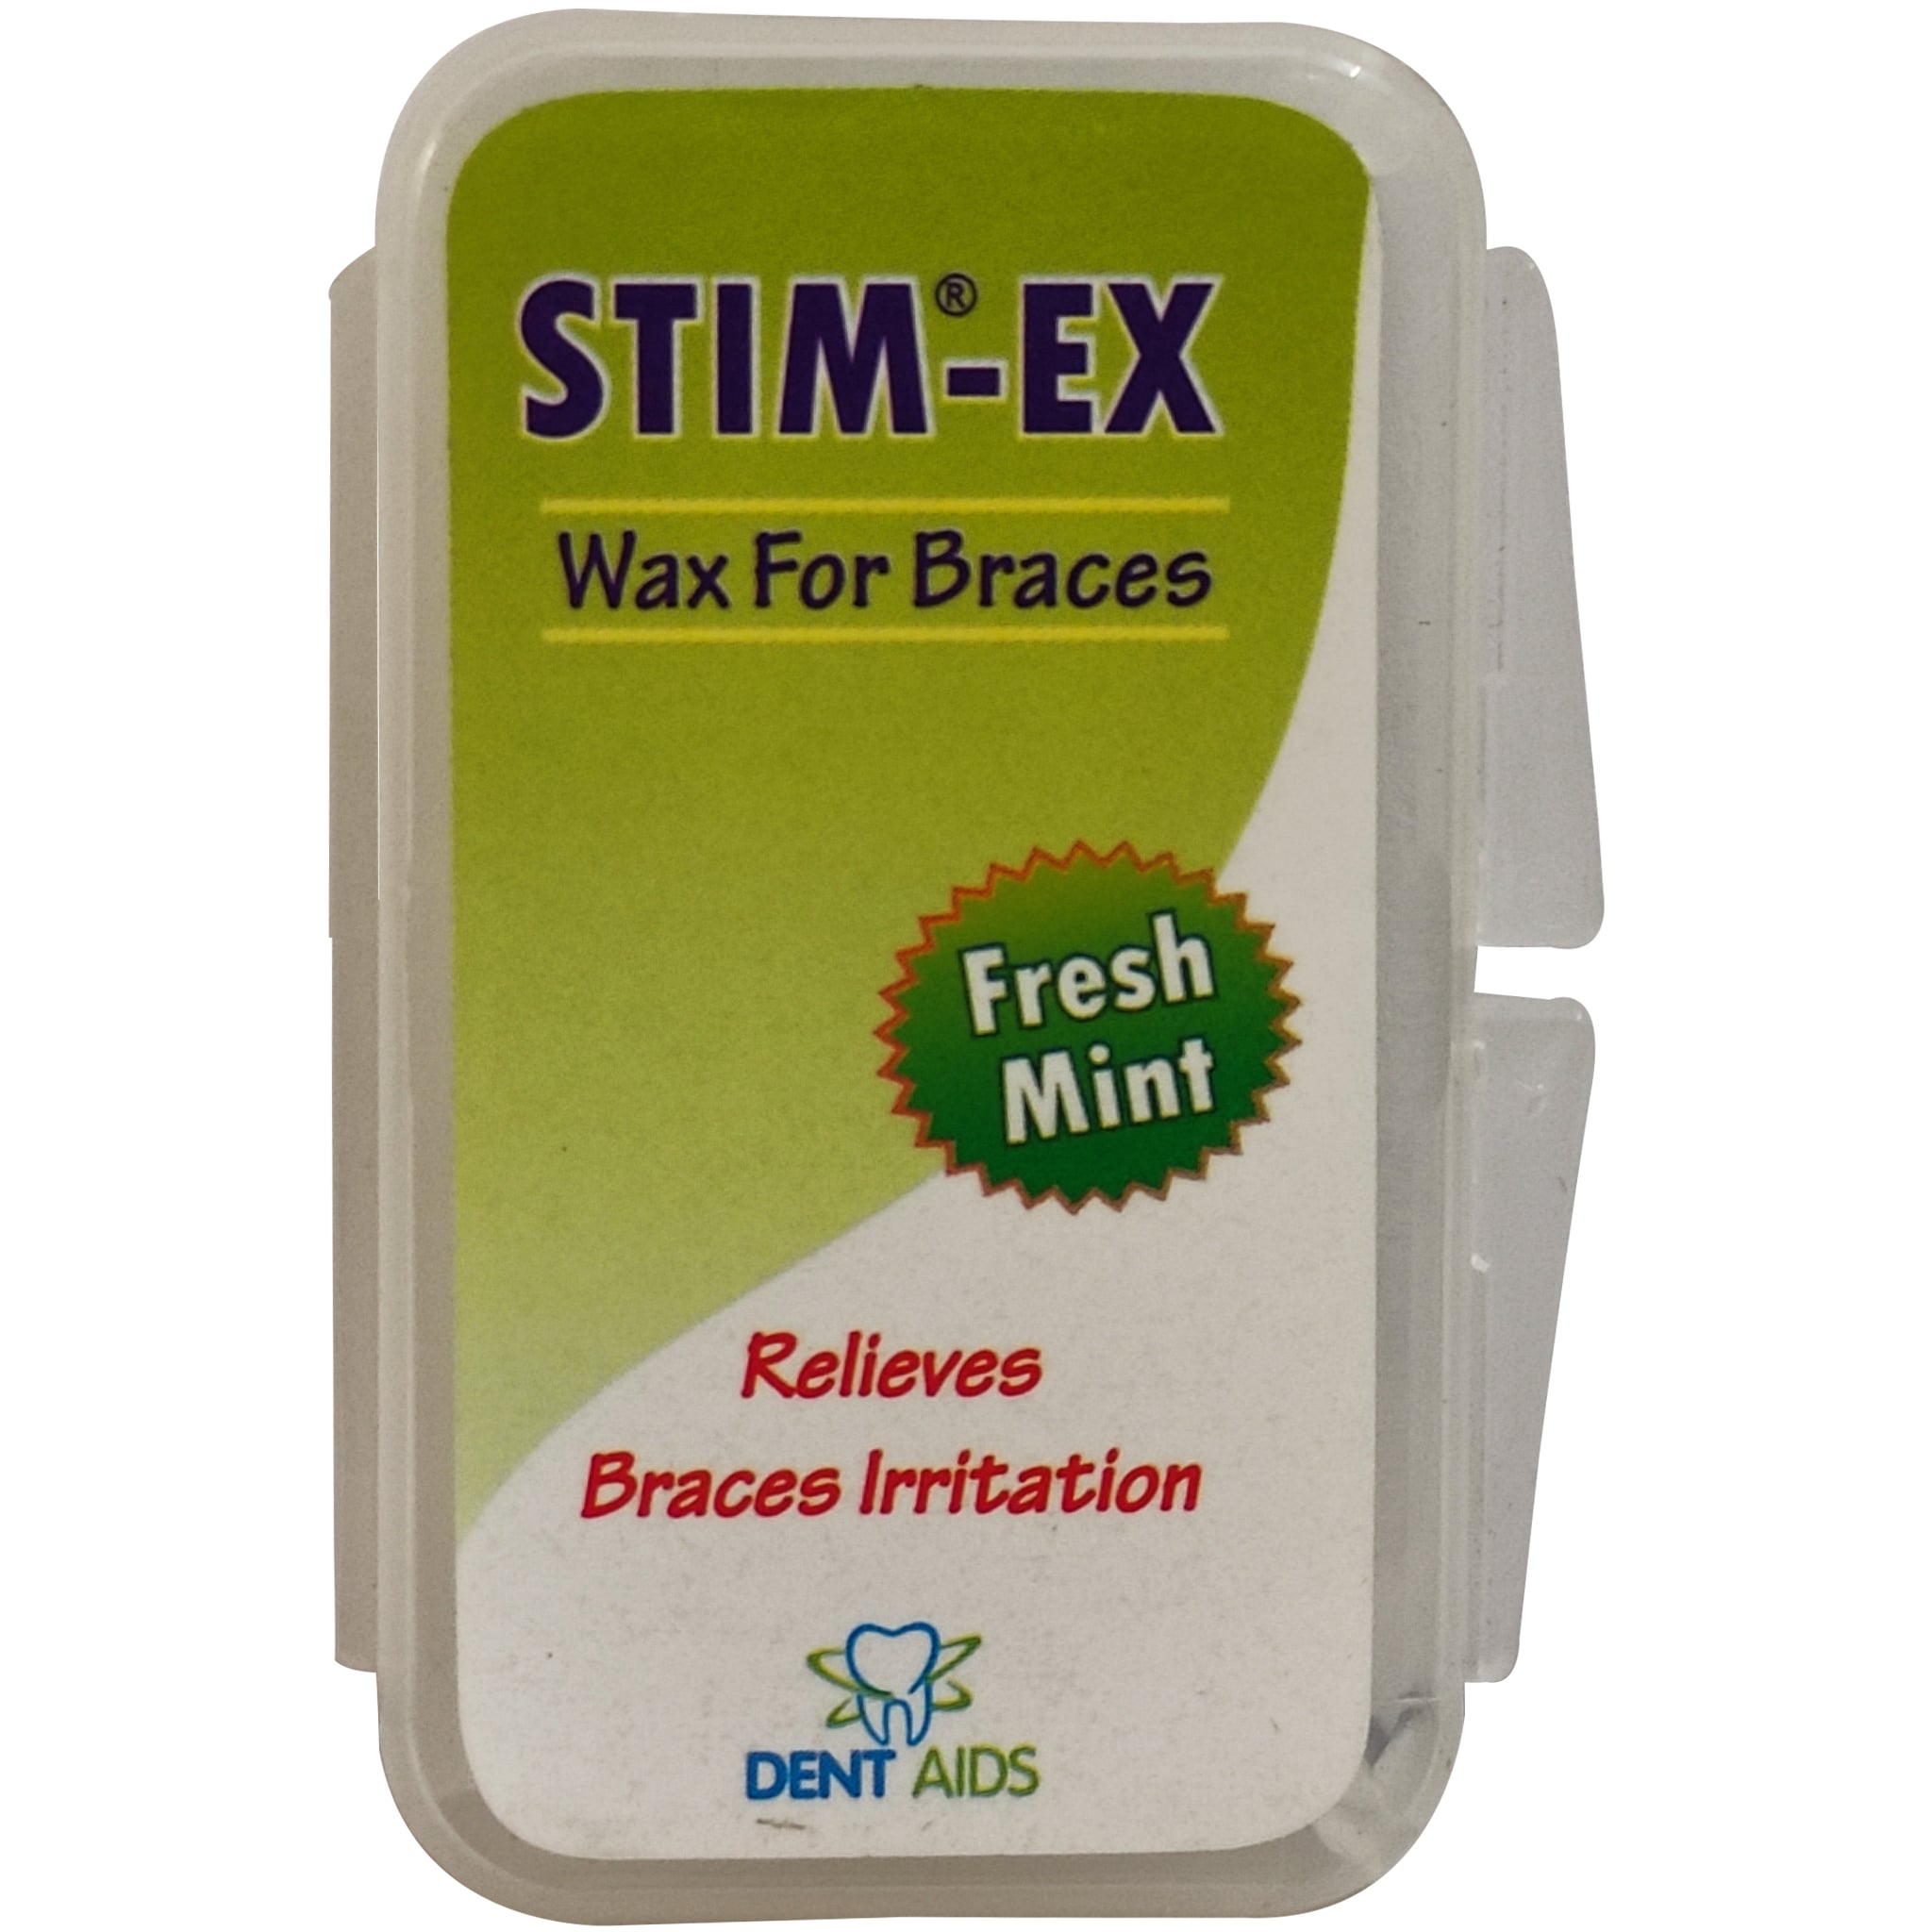 STIM-EX Wax For Braces